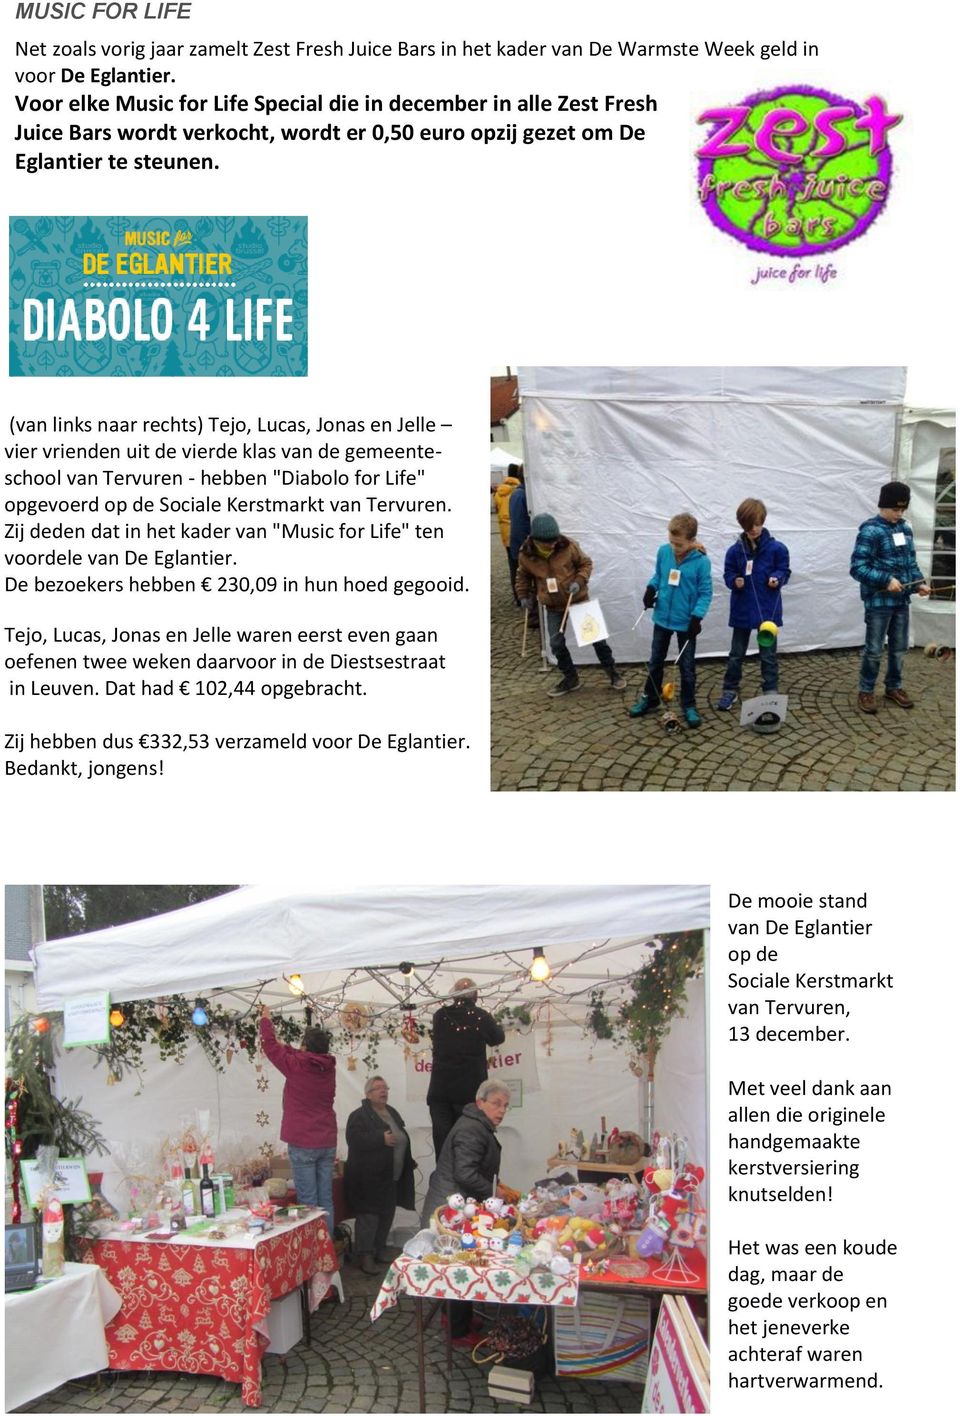 (van links naar rechts) Tejo, Lucas, Jonas en Jelle vier vrienden uit de vierde klas van de gemeenteschool van Tervuren - hebben "Diabolo for Life" opgevoerd op de Sociale Kerstmarkt van Tervuren.